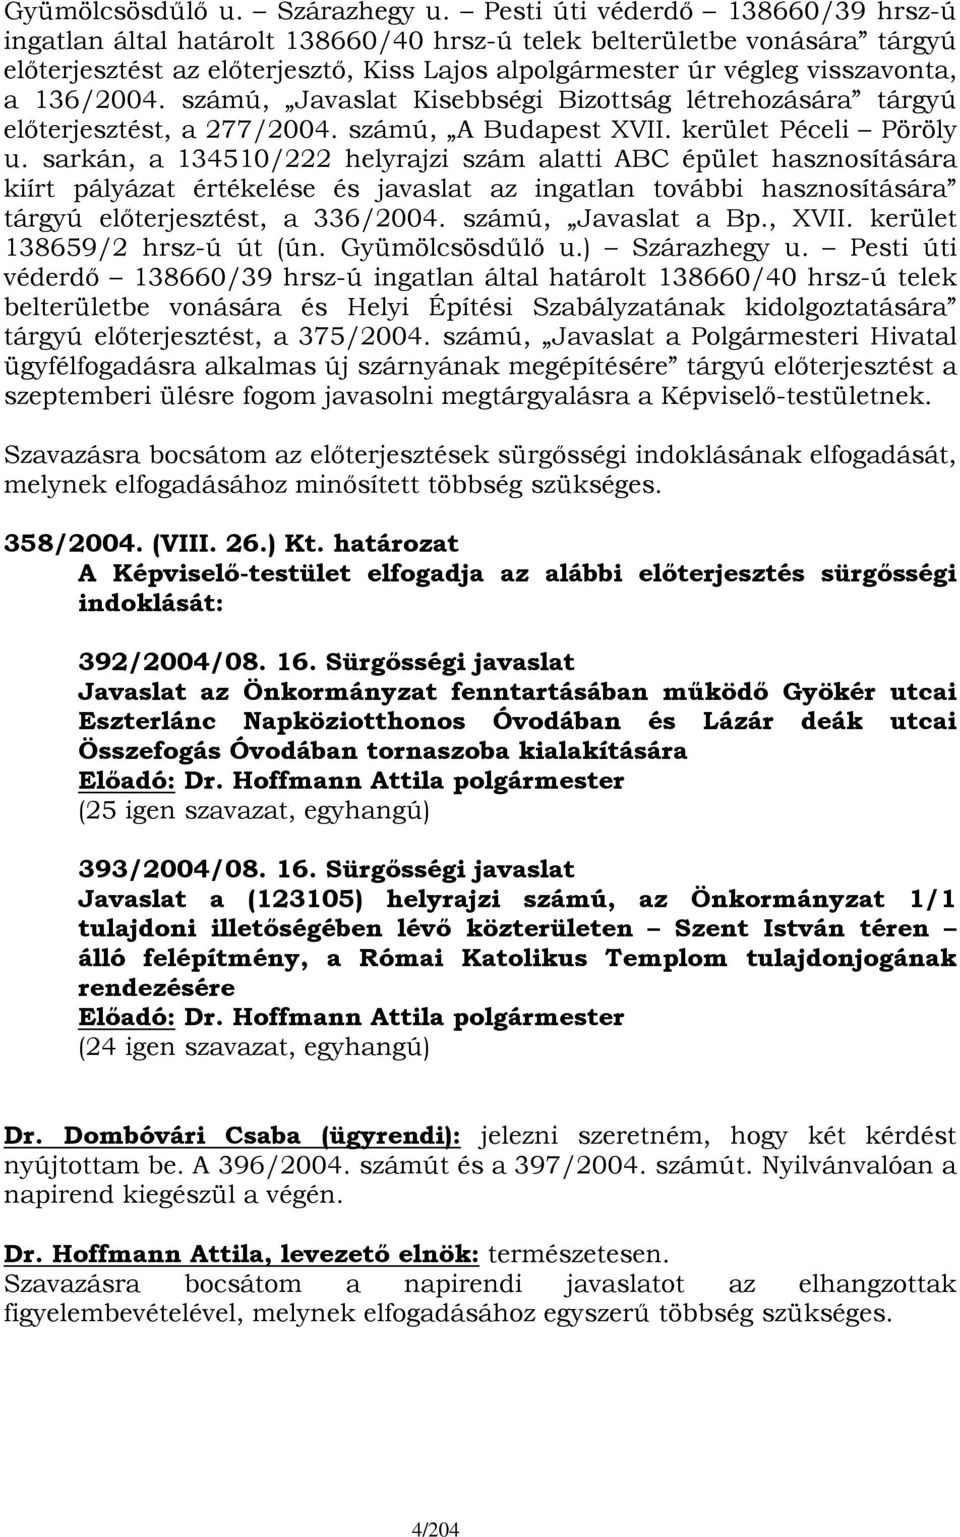 136/2004. számú, Javaslat Kisebbségi Bizottság létrehozására tárgyú előterjesztést, a 277/2004. számú, A Budapest XVII. kerület Péceli Pöröly u.